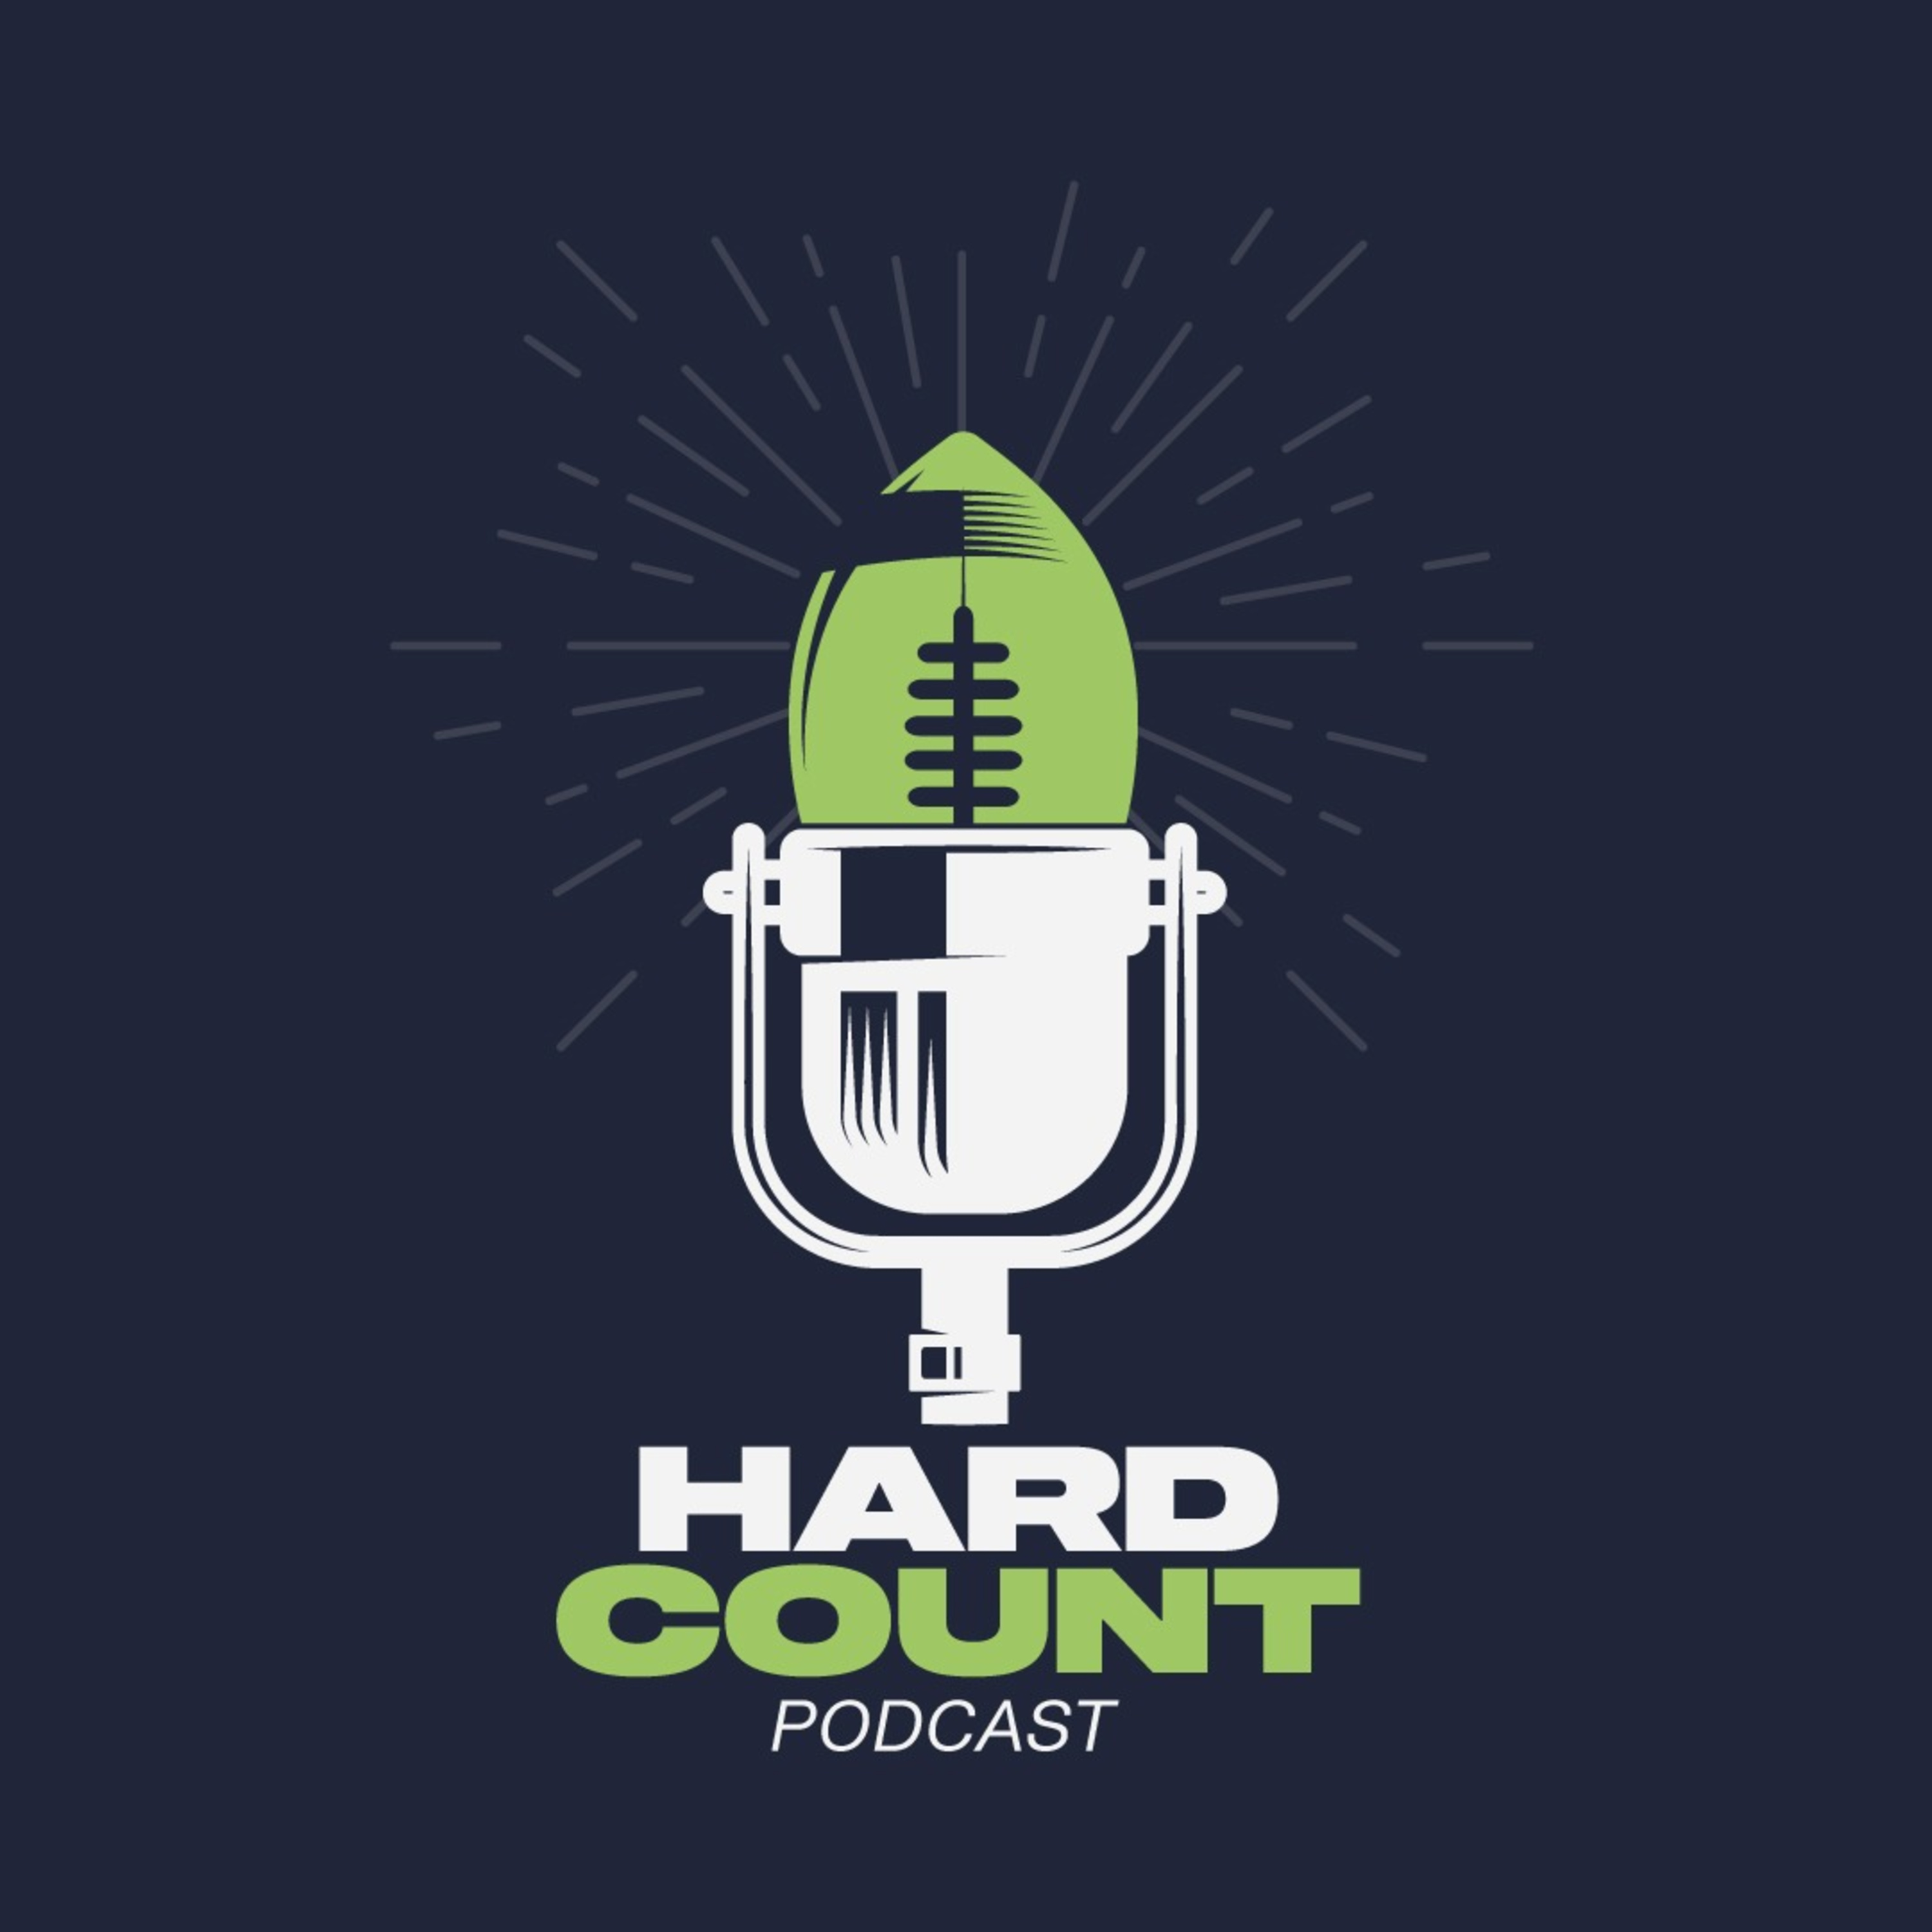 Hard Count Podcast - Episódio 165 - Mock Draft NFL 2024